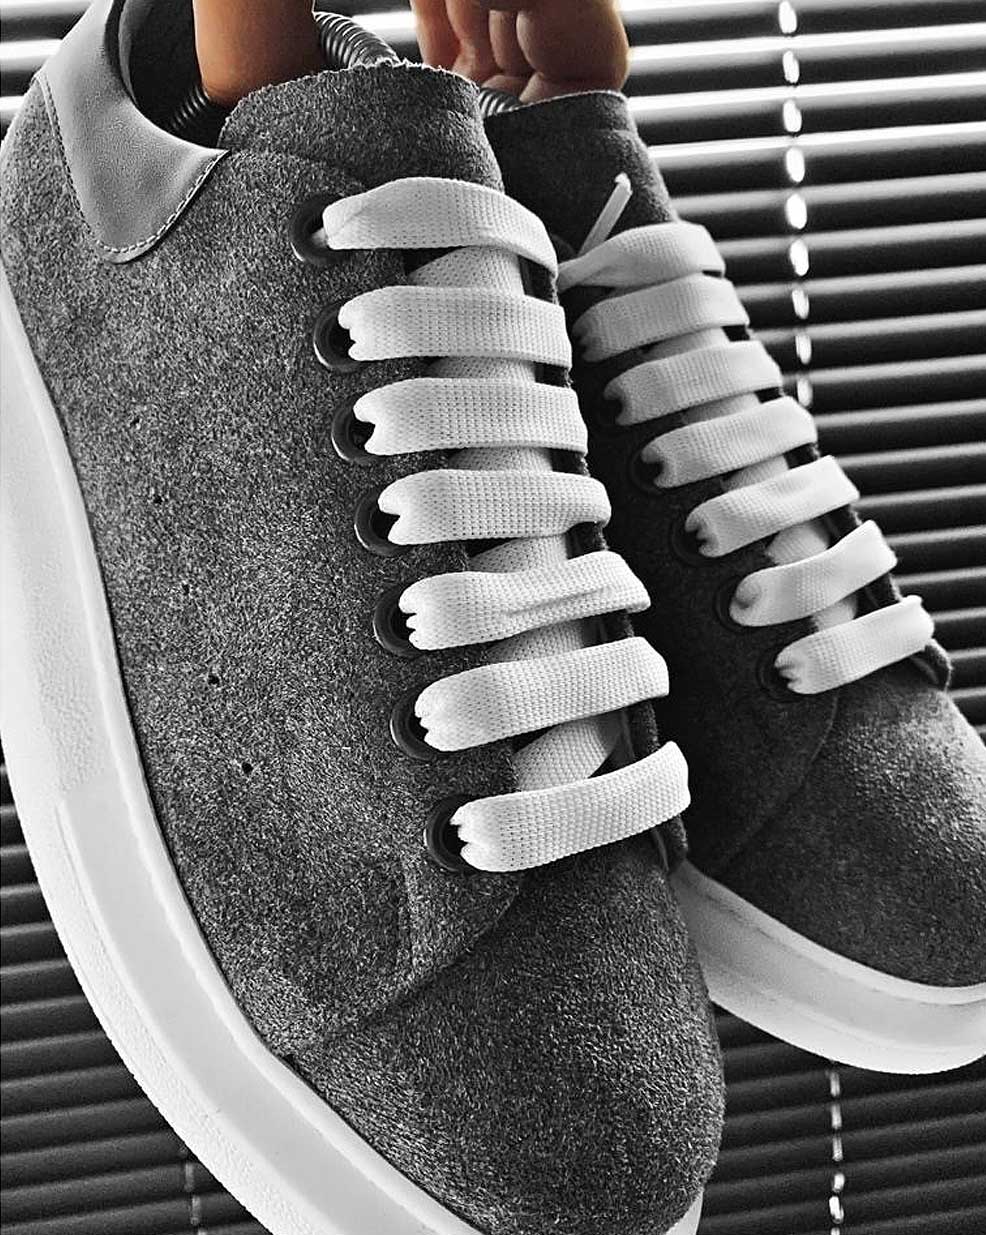 Chaussures basket sneakers BB Salazar en suédine grise et semelle blanche stylée pour homme